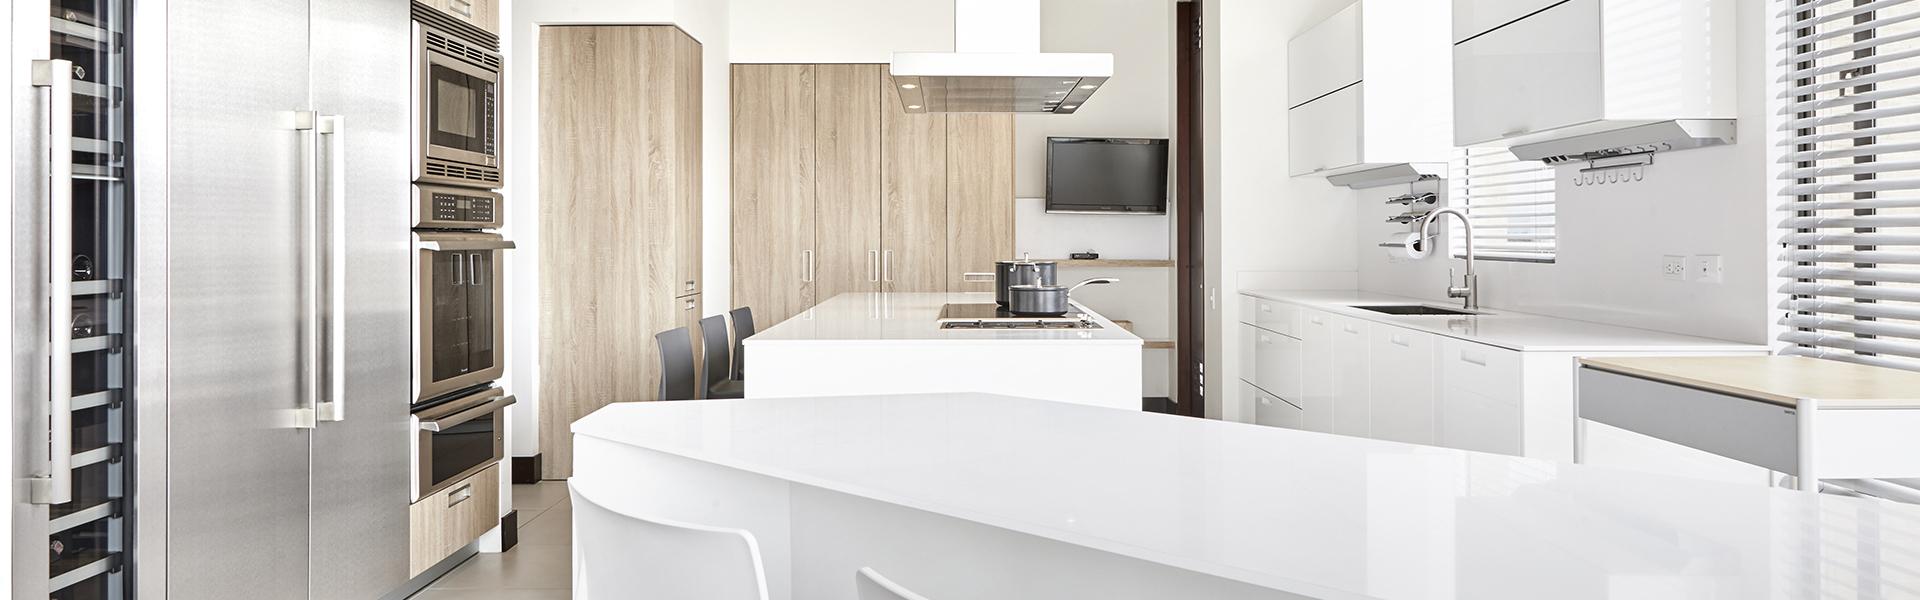 Cocina blanca con isla y abierta al salón equipada con muebles diseñados por Santos